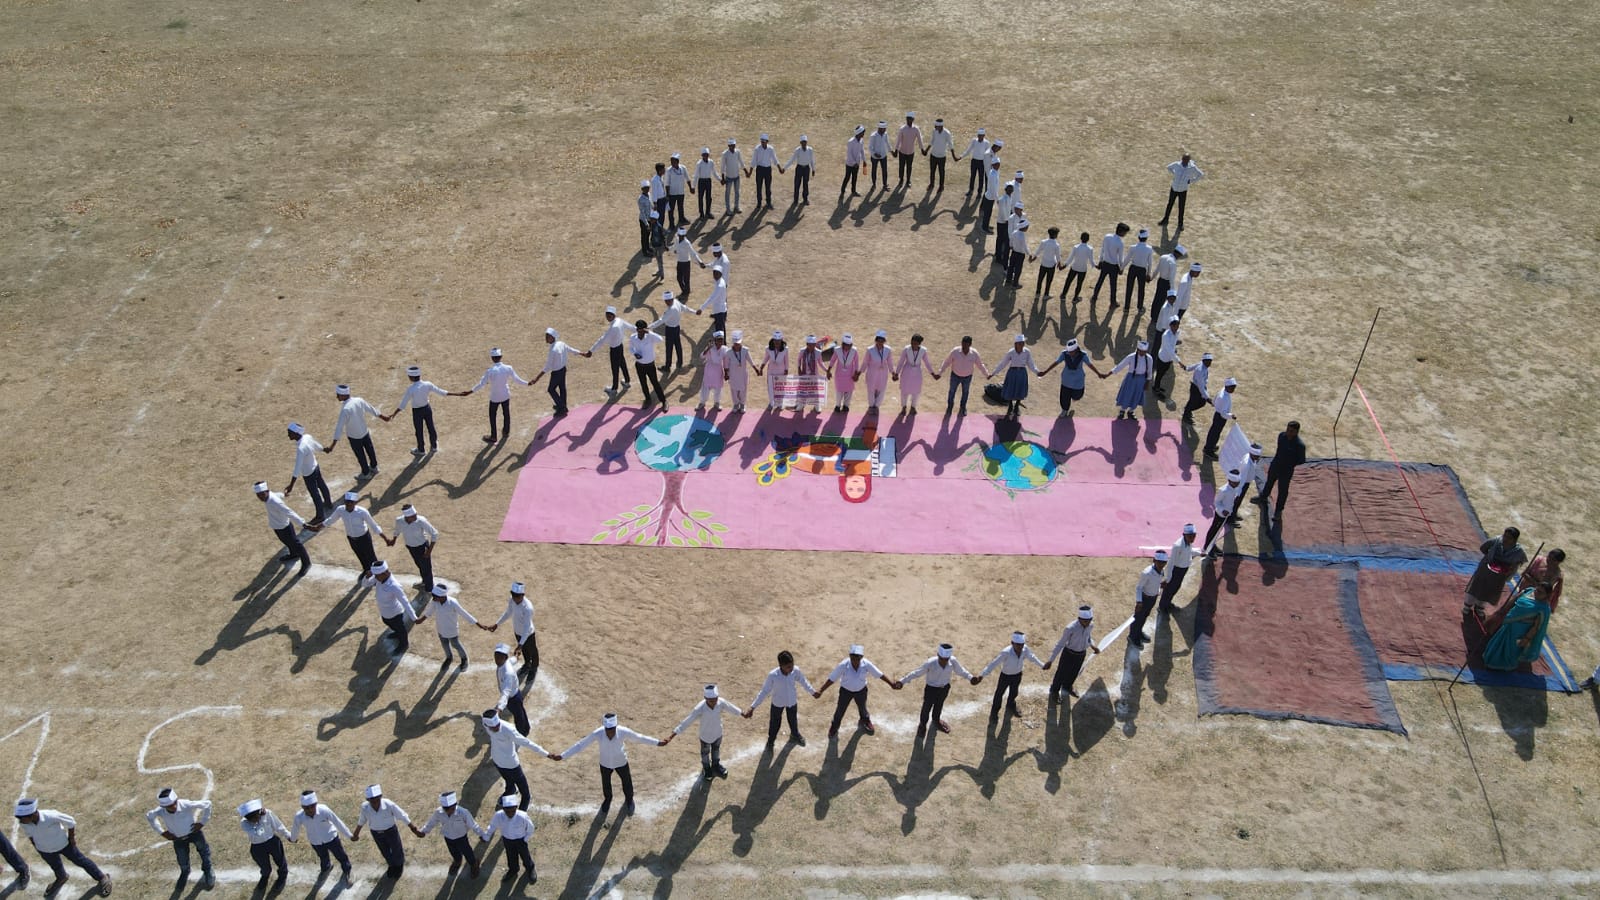 गोण्डा जनपद में पृथ्वी दिवस के अवसर पर स्कूली बच्चों ने 74. 86 किलोमीटर लंबी बनाई मानव श्रृंखला